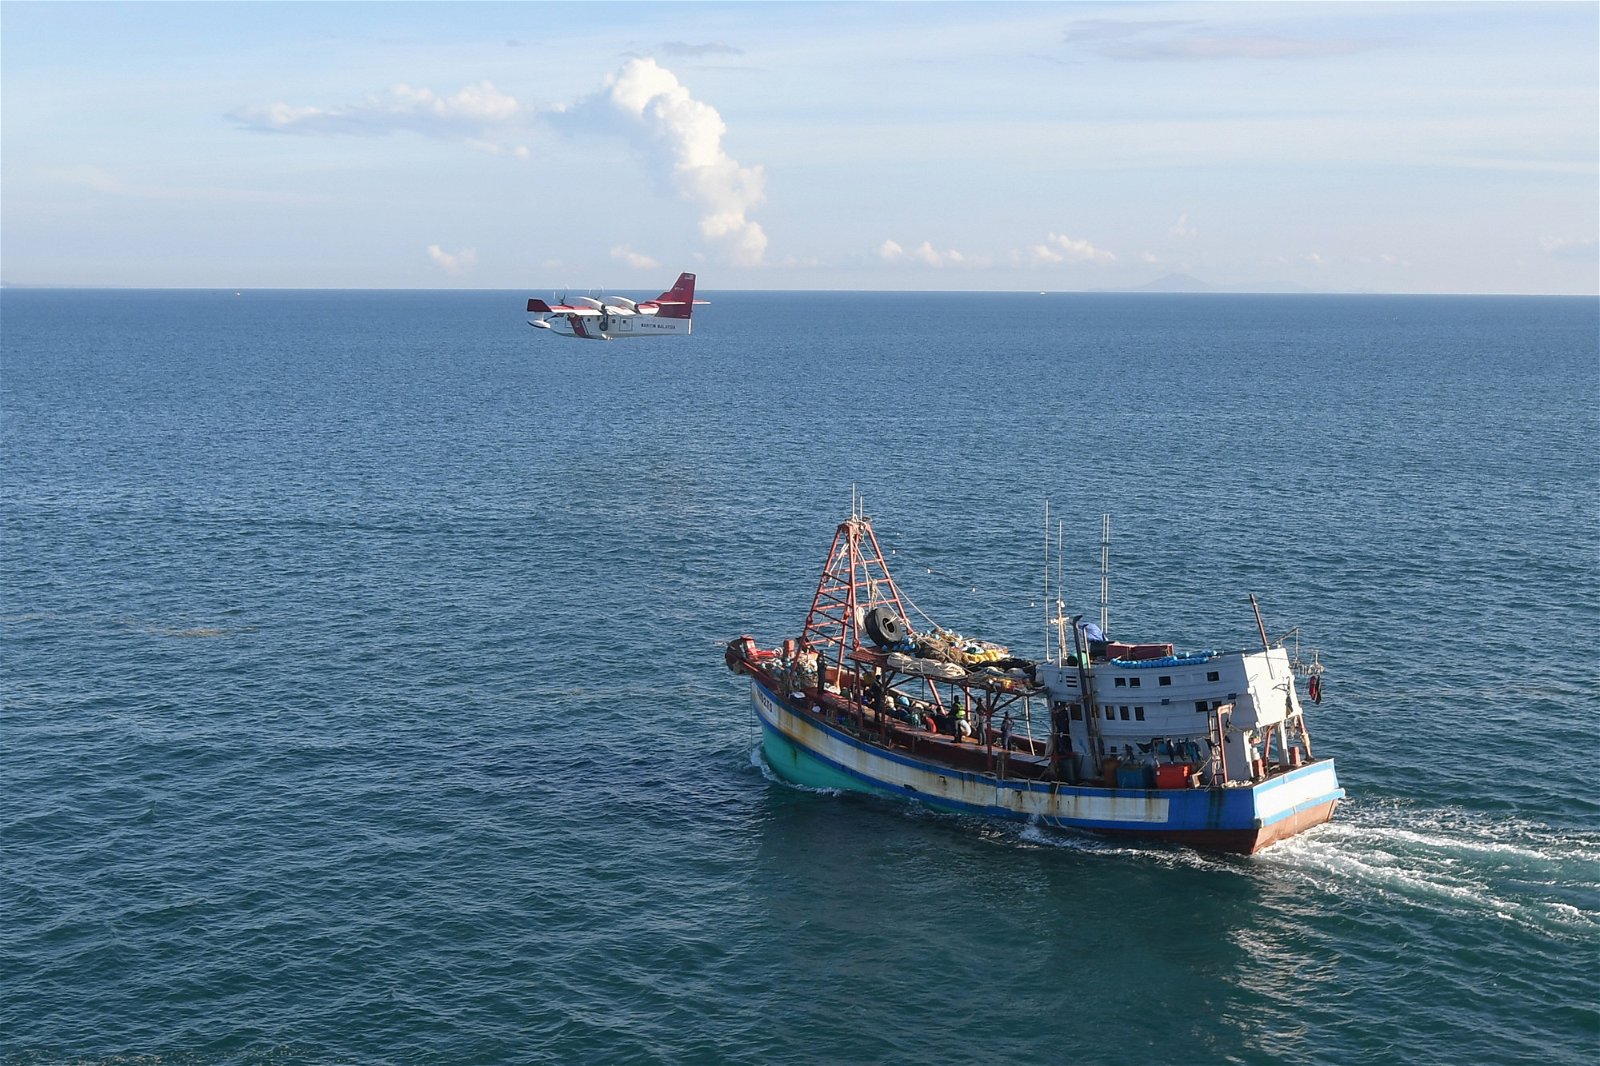 大马海事执法机构以庞巴迪CL-415水陆两栖飞机，在空中监视被扣押的越南渔船。